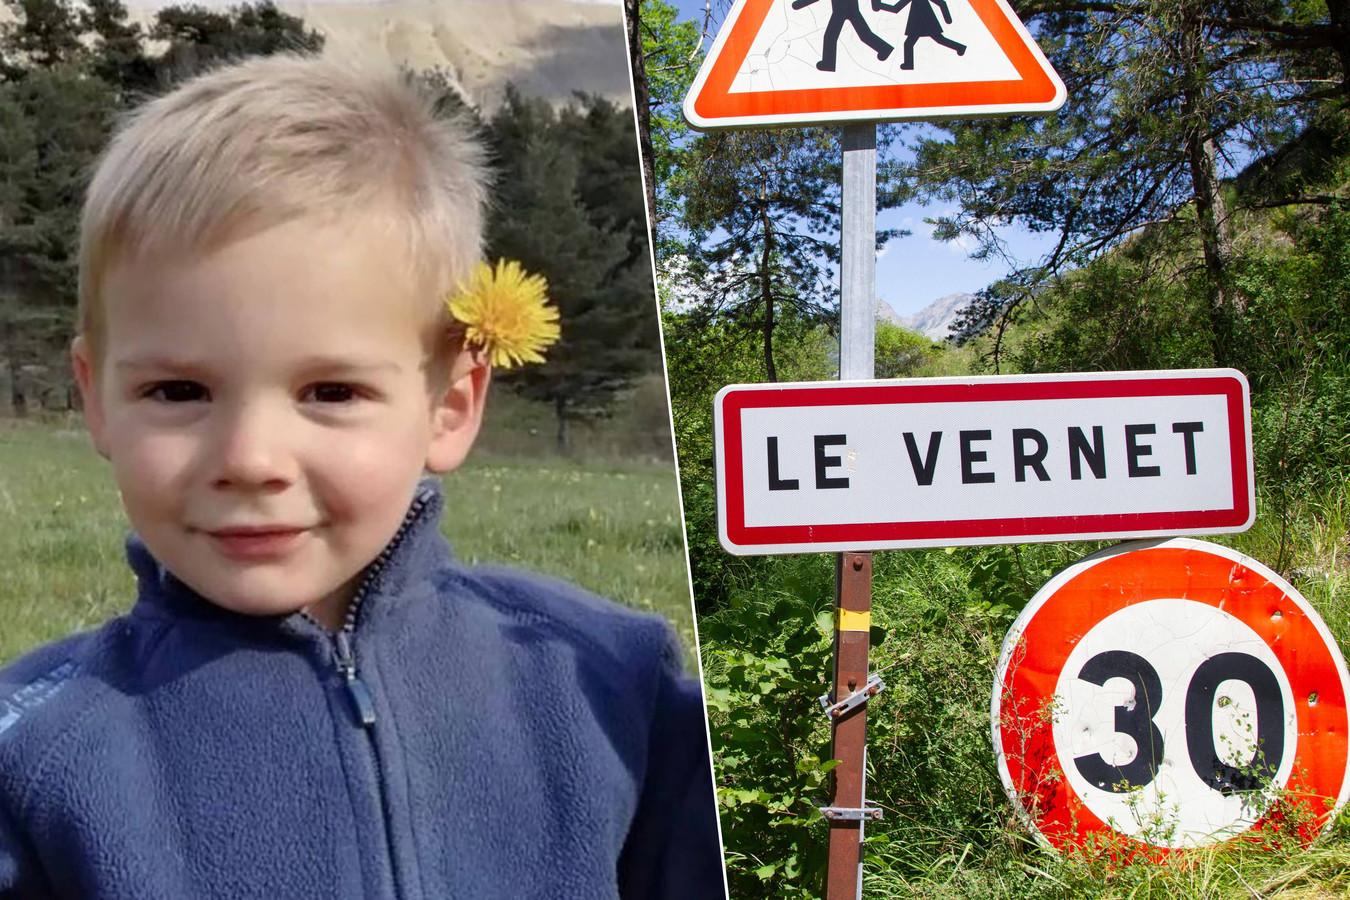 Disparition du petit Émile: des ossements de l'enfant ont été découverts, annonce le parquet d'Aix-en-Provence ?appId=21791a8992982cd8da851550a453bd7f&quality=0